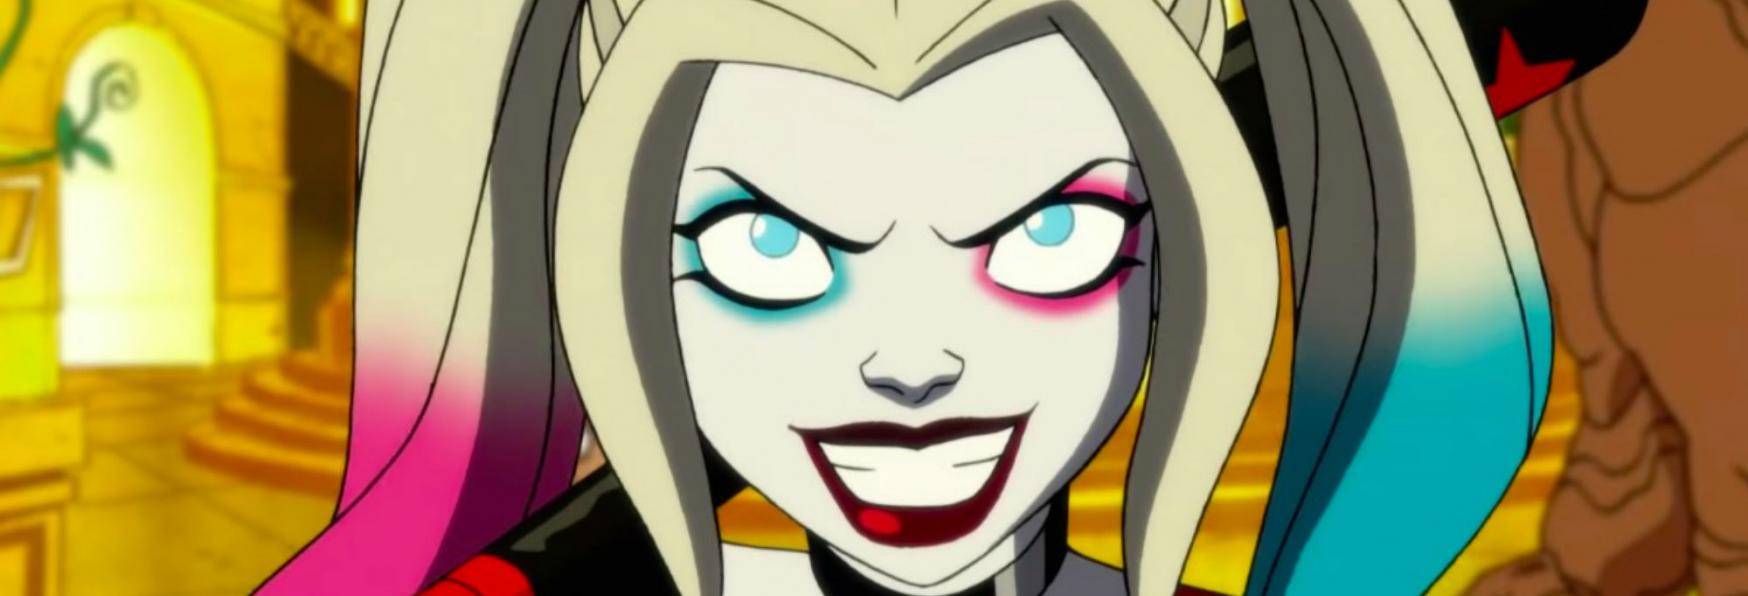 Harley Quinn 4: annunciata la Data di Uscita della nuova Stagione